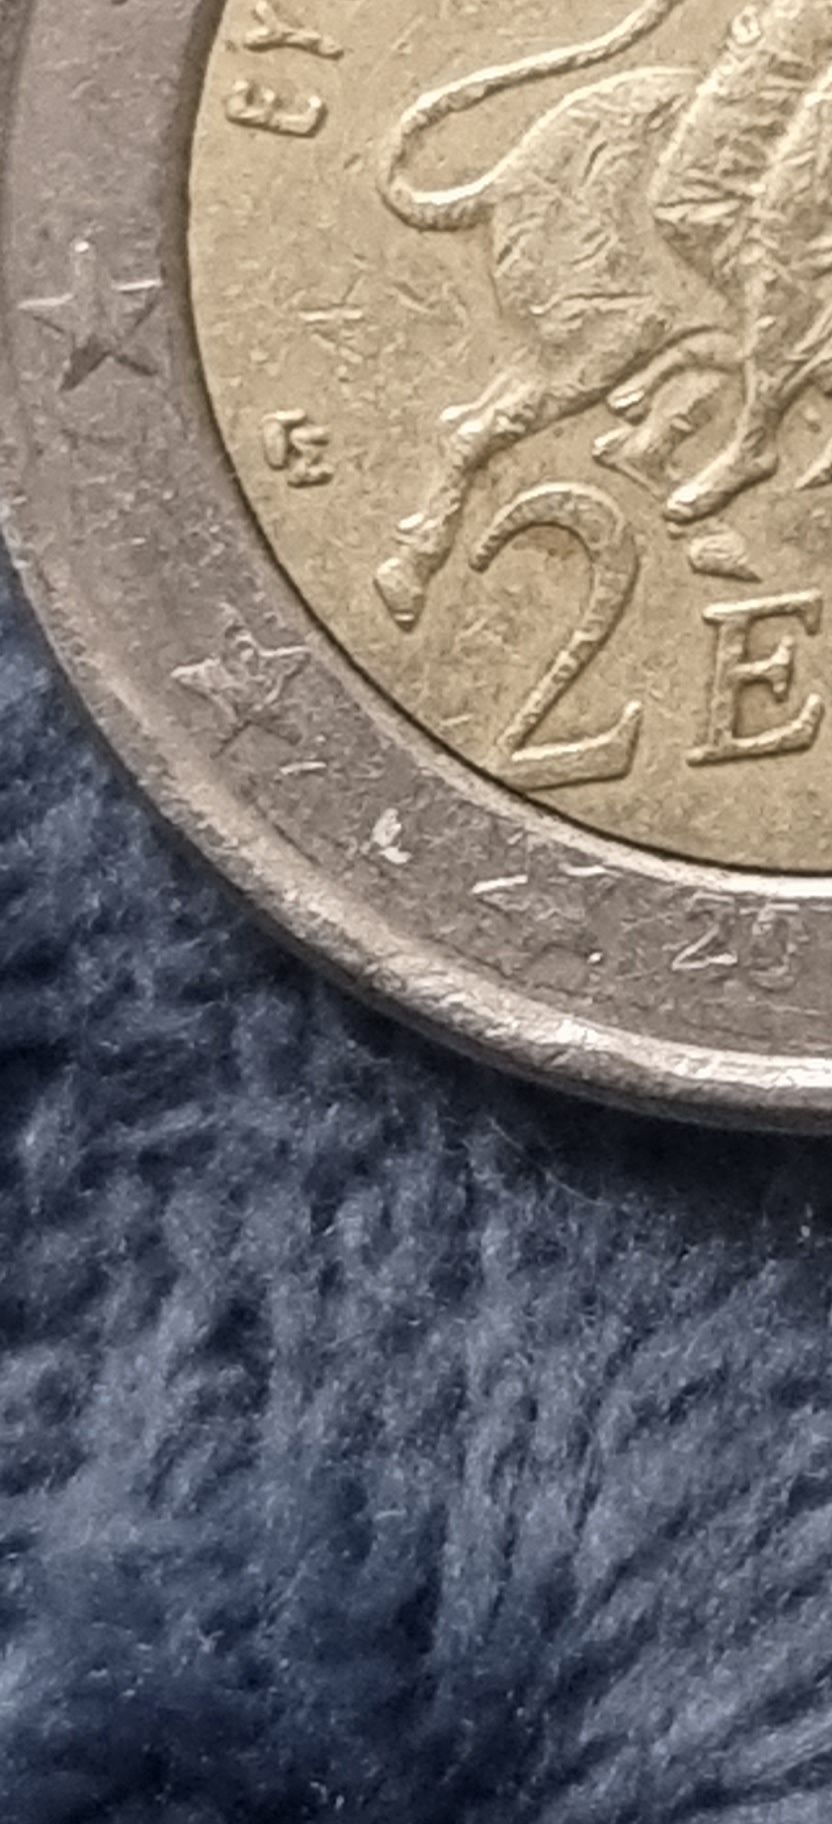 Moeda grega de 2 euros muito rara com letra “S”